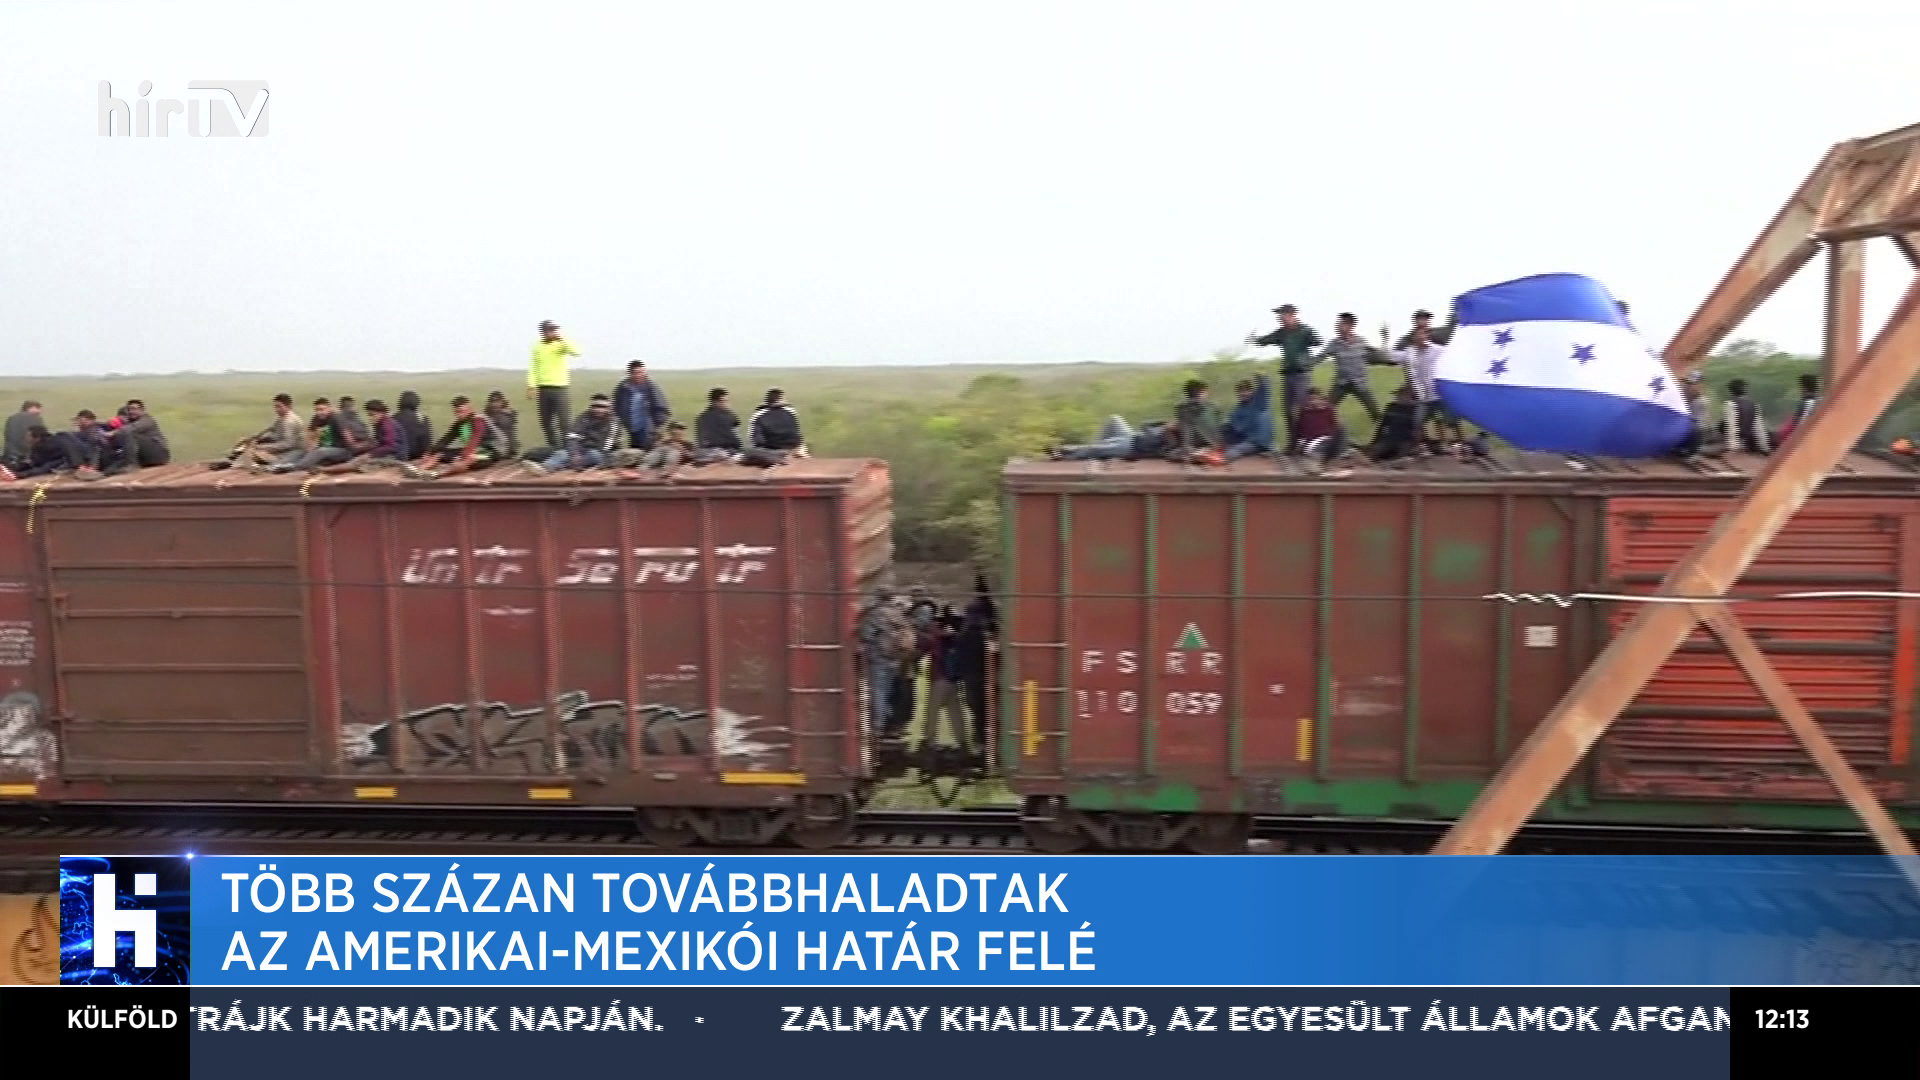 Vonatokkal utaznak a migránsok